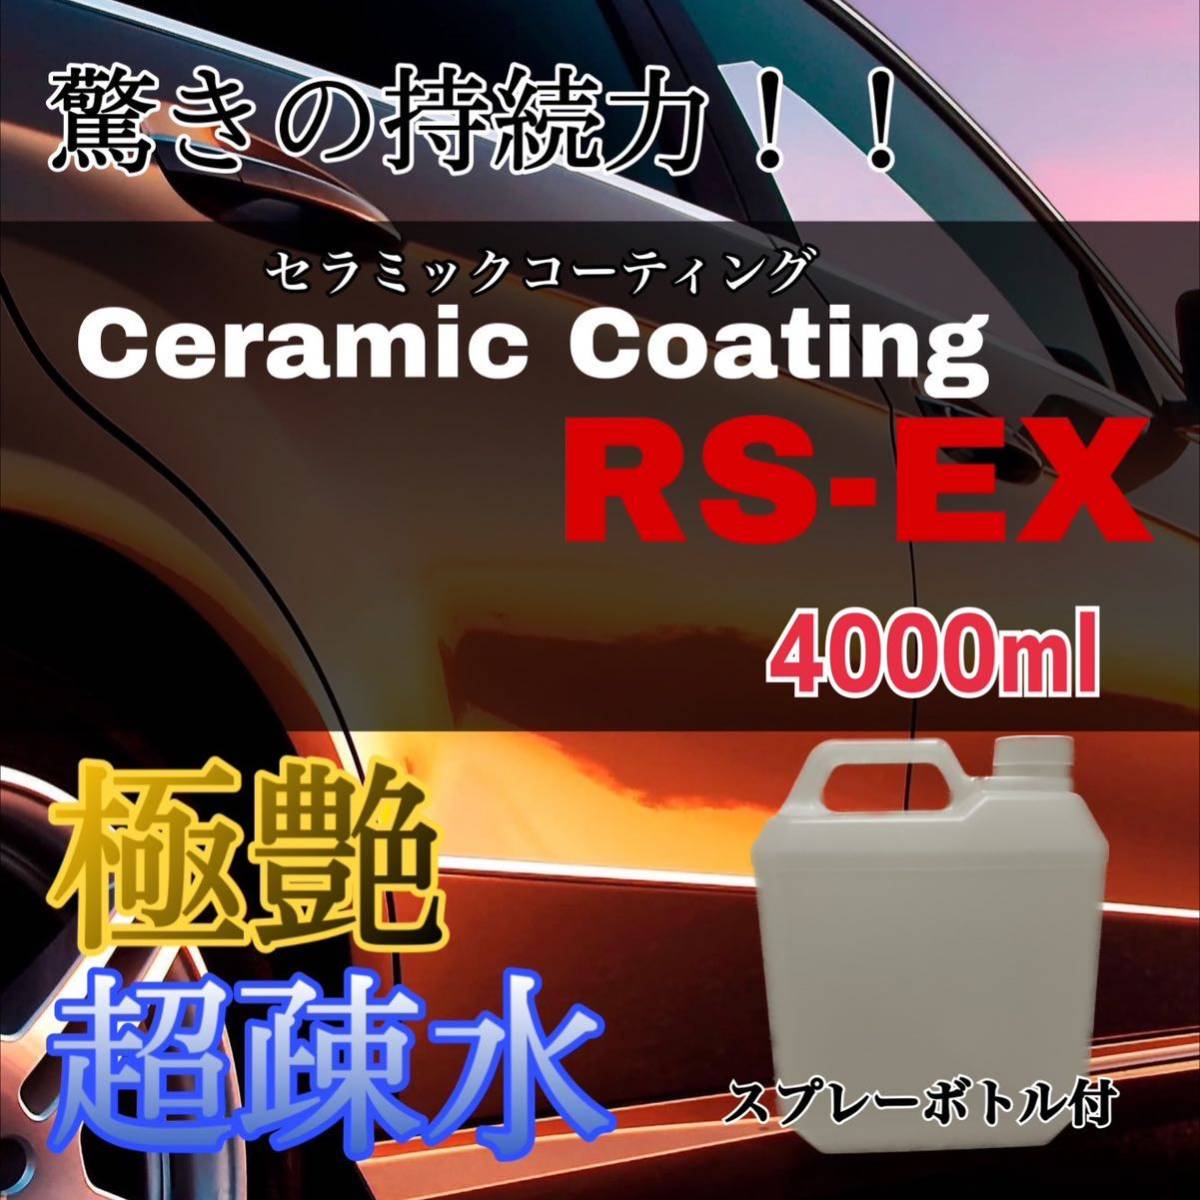 極艶・超疎水セラミックコーティング剤RS-EX 大容量4000ml ツヤだし 洗車 効果長続き